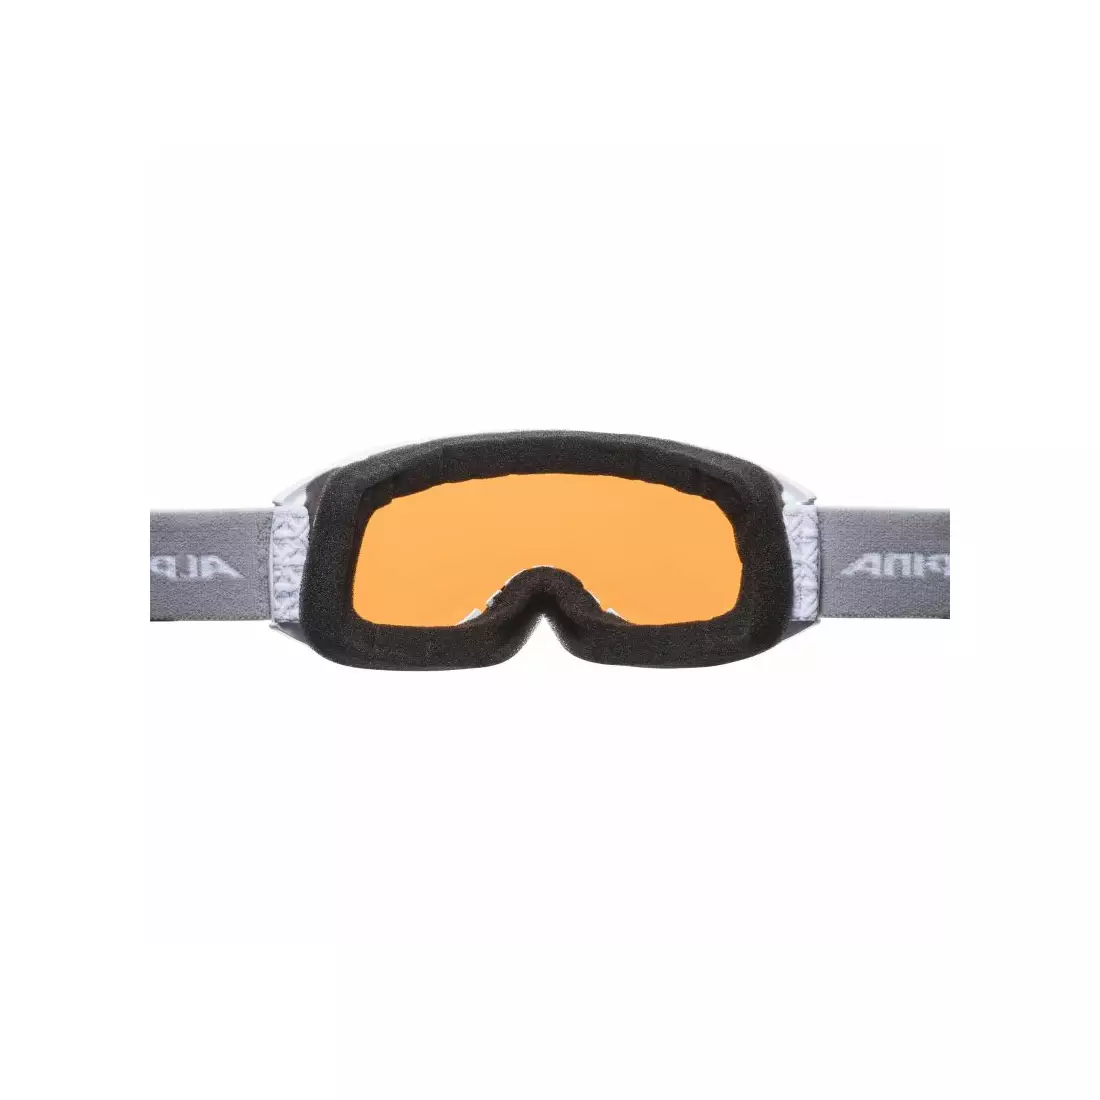 ALPINA lyžařské / snowboardové brýle M40 NAKISKA DH white A7281111